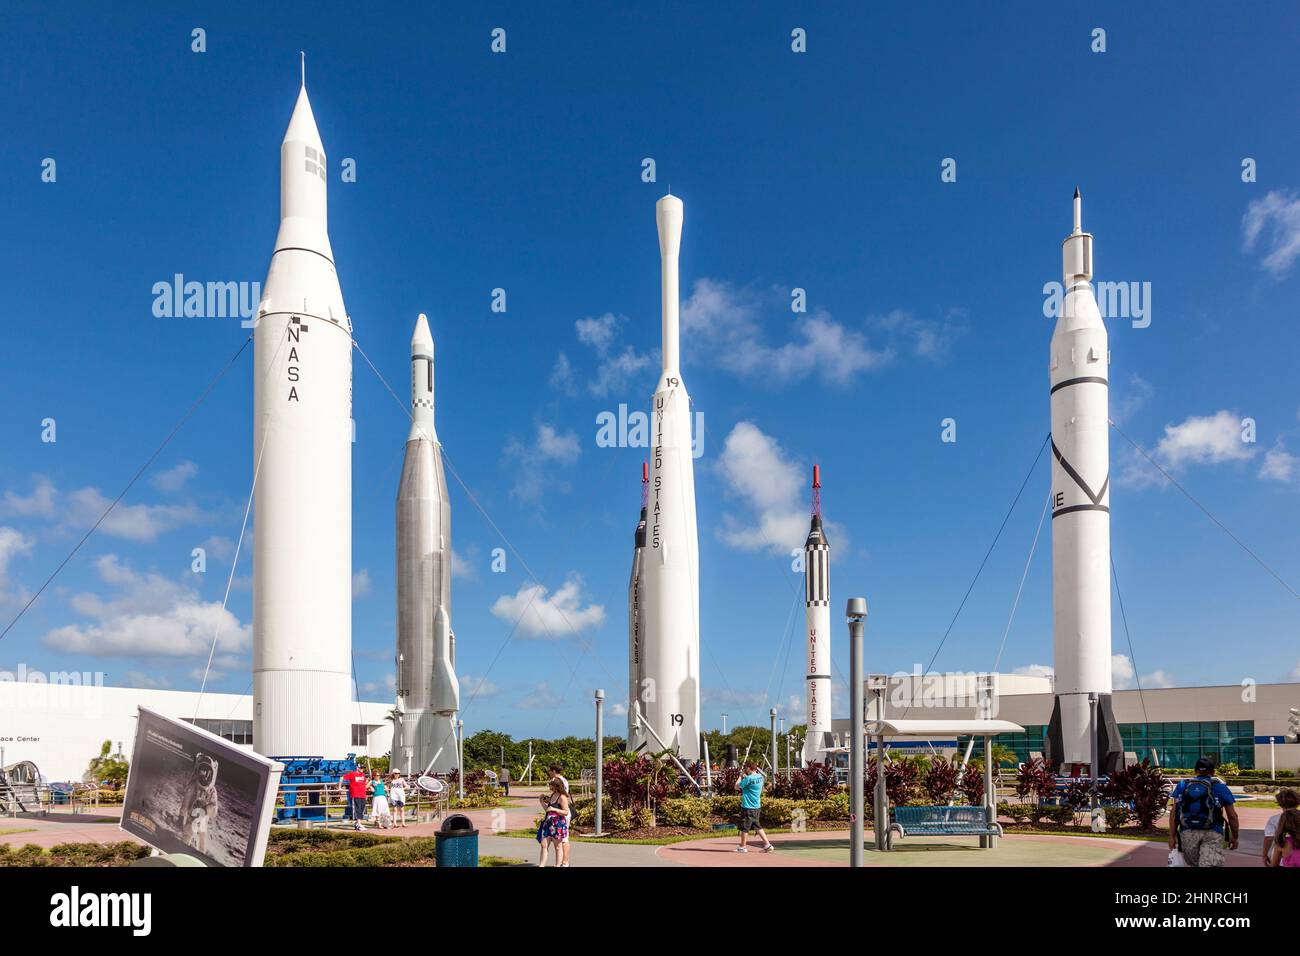 Le Rocket Garden du Kennedy Space Center présente 8 fusées authentiques issues d'explorations spatiales passées Banque D'Images